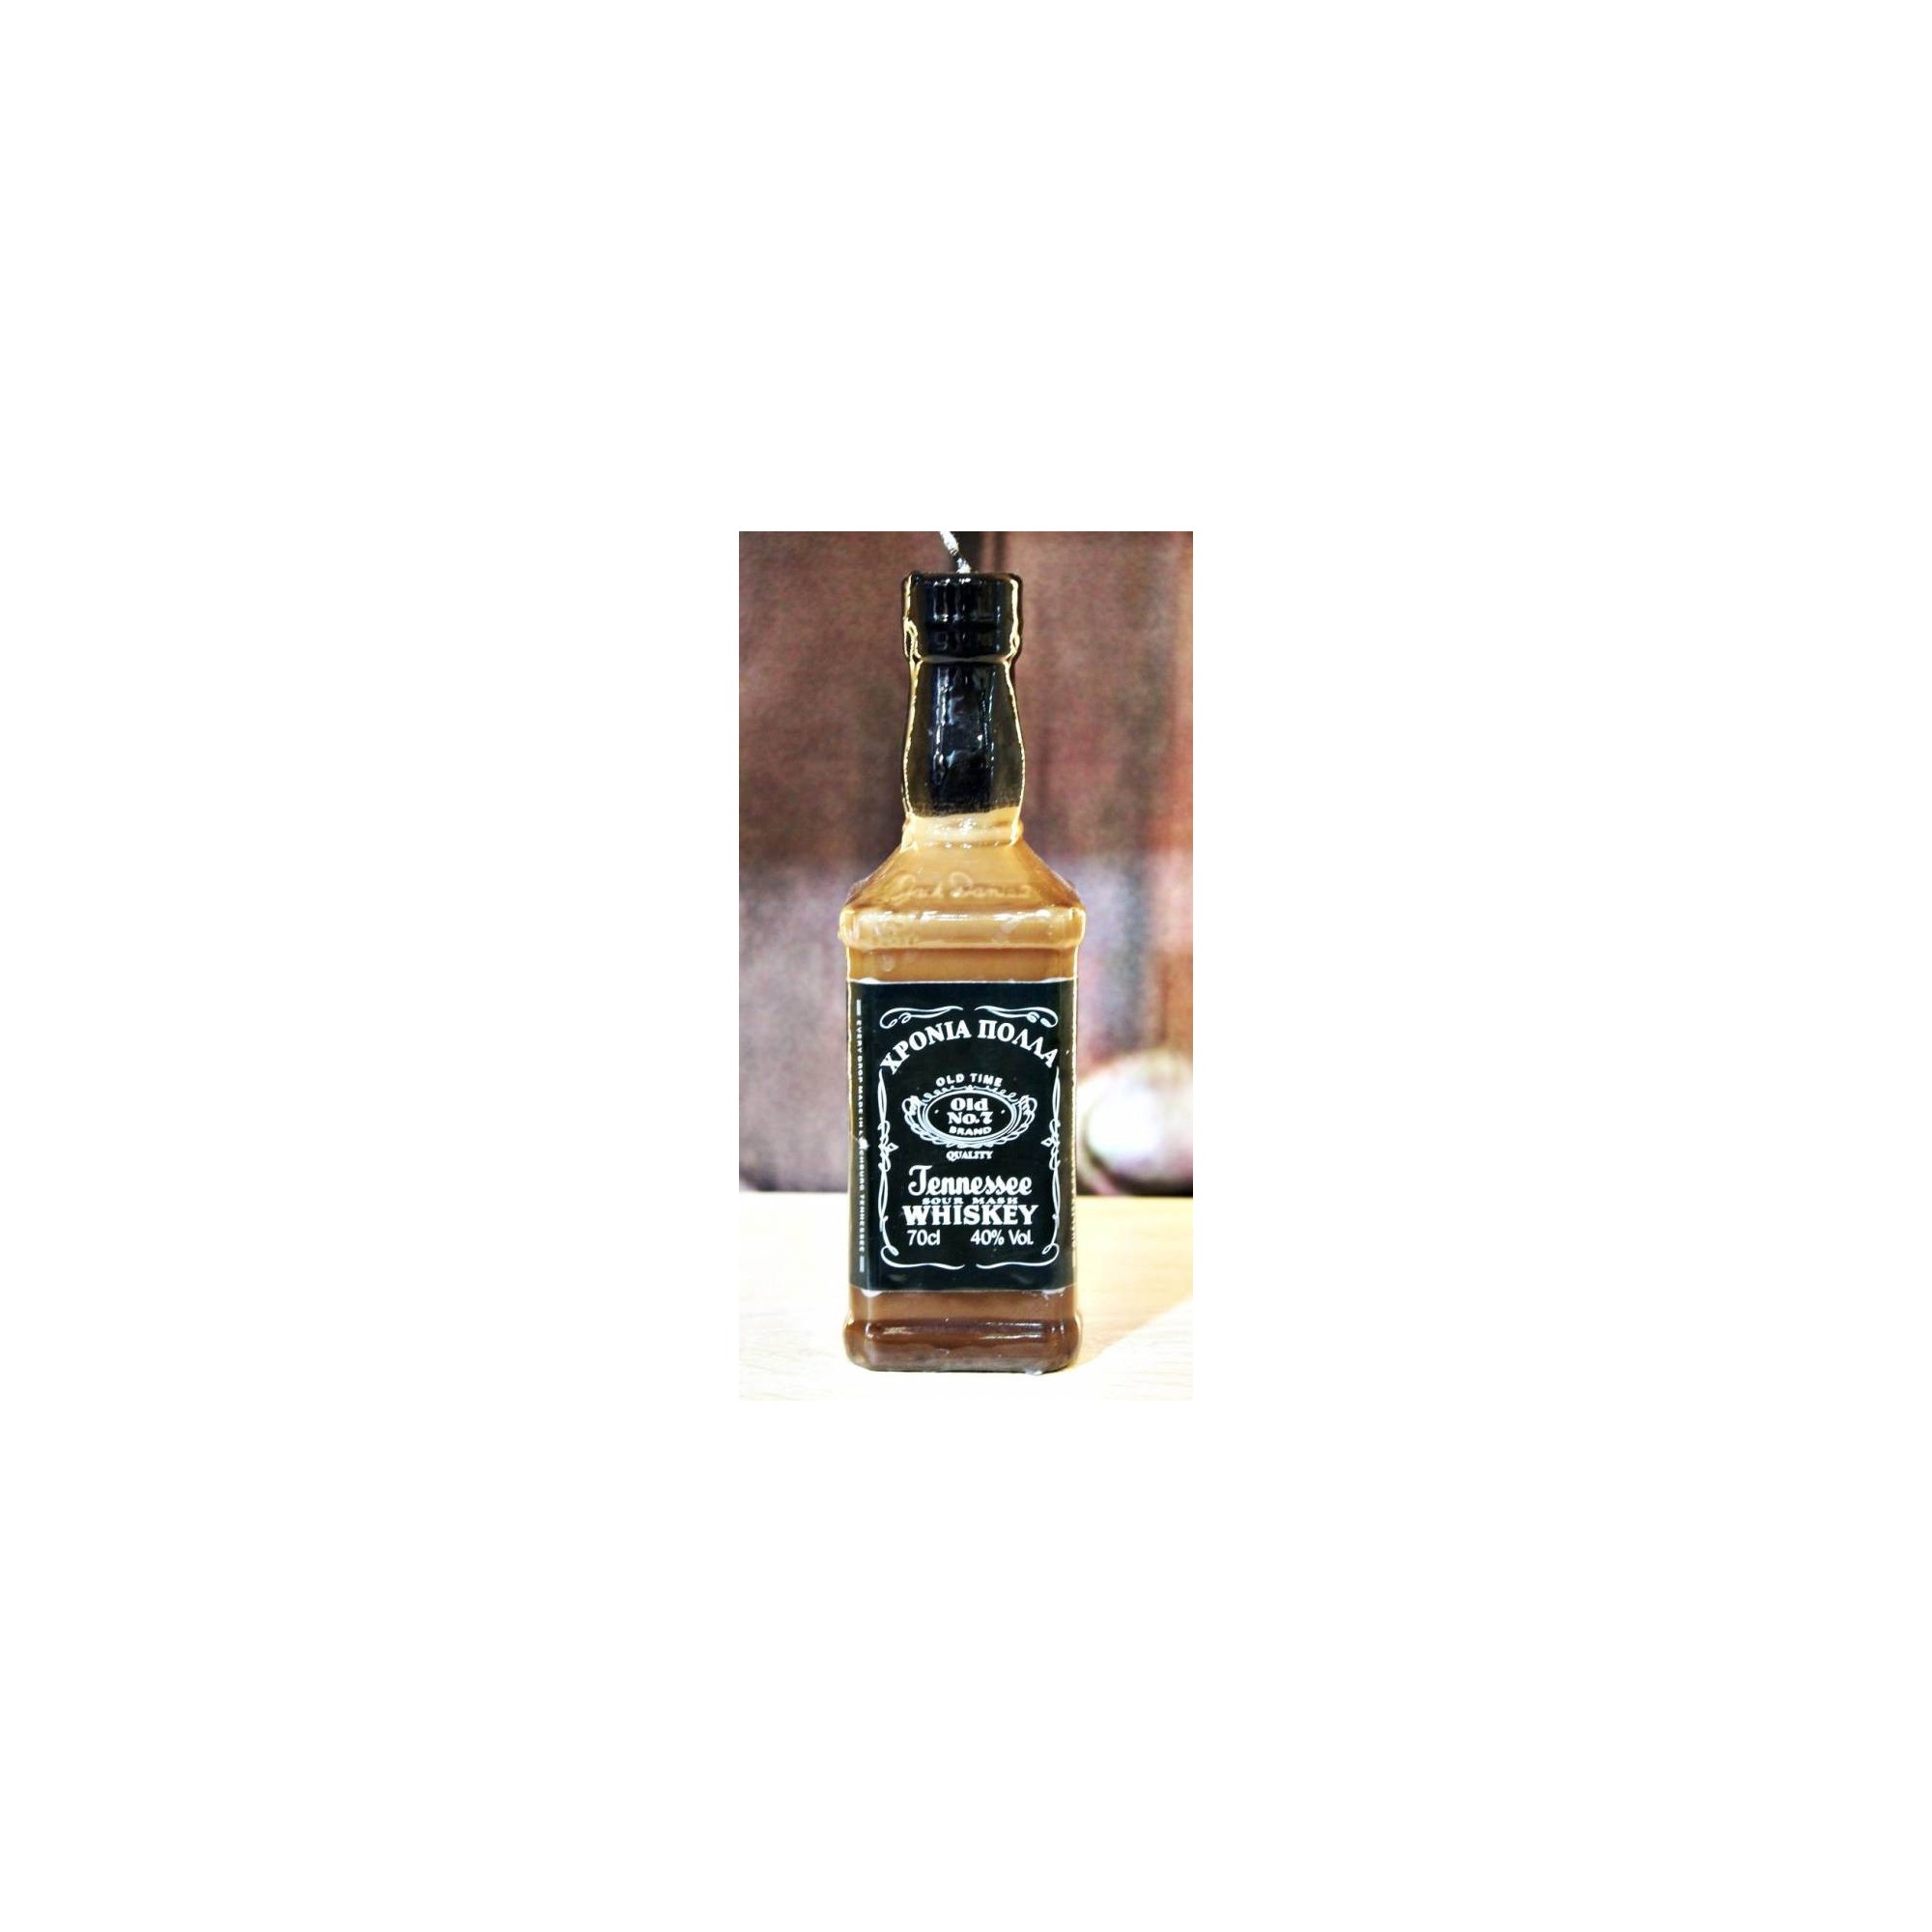 Λαμπάδα μπουκάλι ουίσκι - G1166